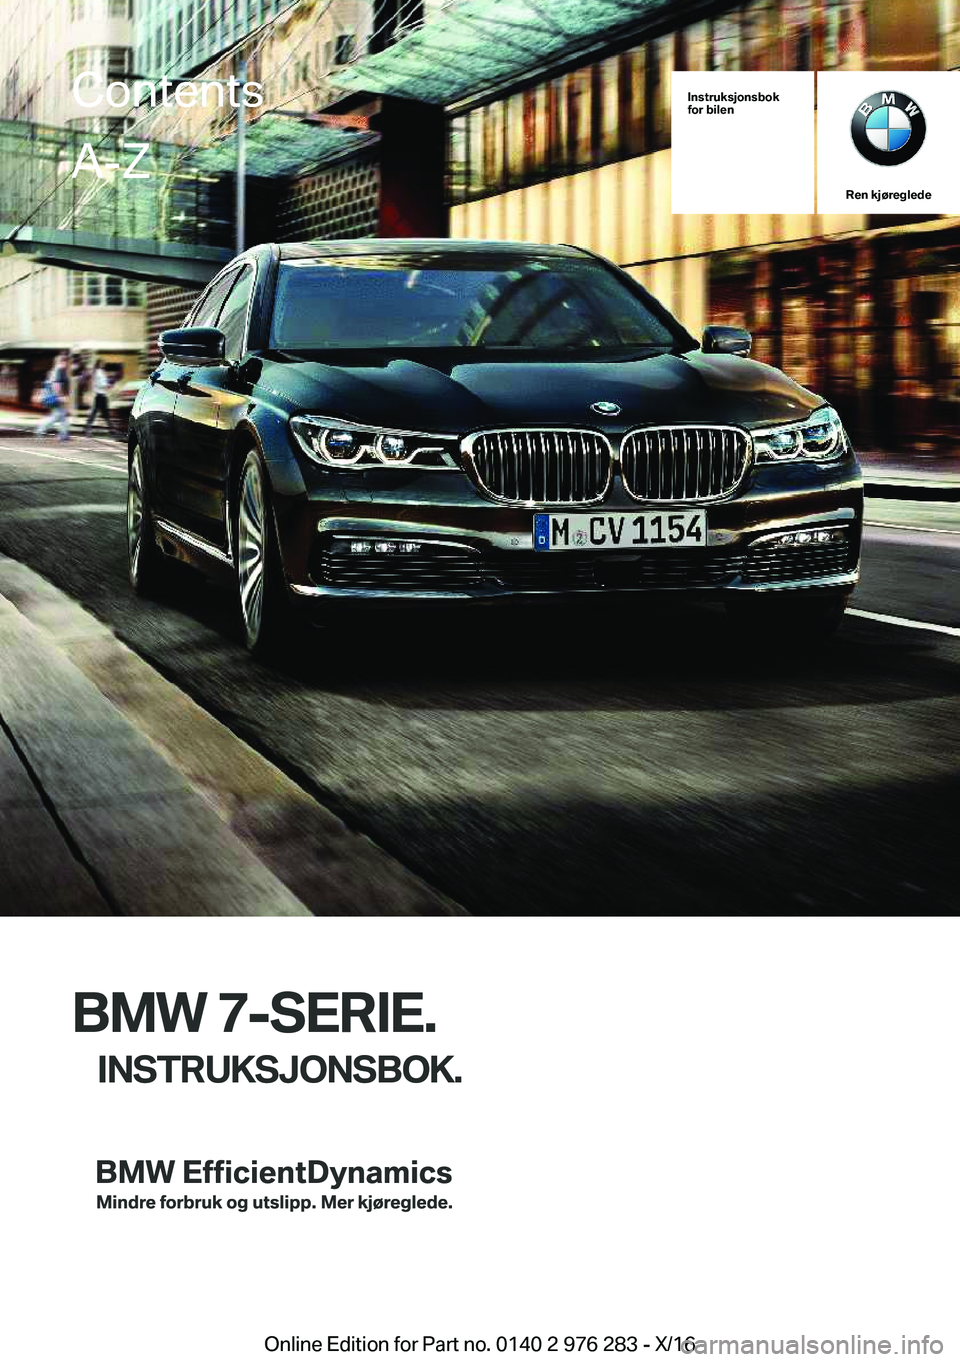 BMW 7 SERIES 2017  InstruksjonsbØker (in Norwegian) �I�n�s�t�r�u�k�s�j�o�n�s�b�o�k
�f�o�r��b�i�l�e�n
�R�e�n��k�j�